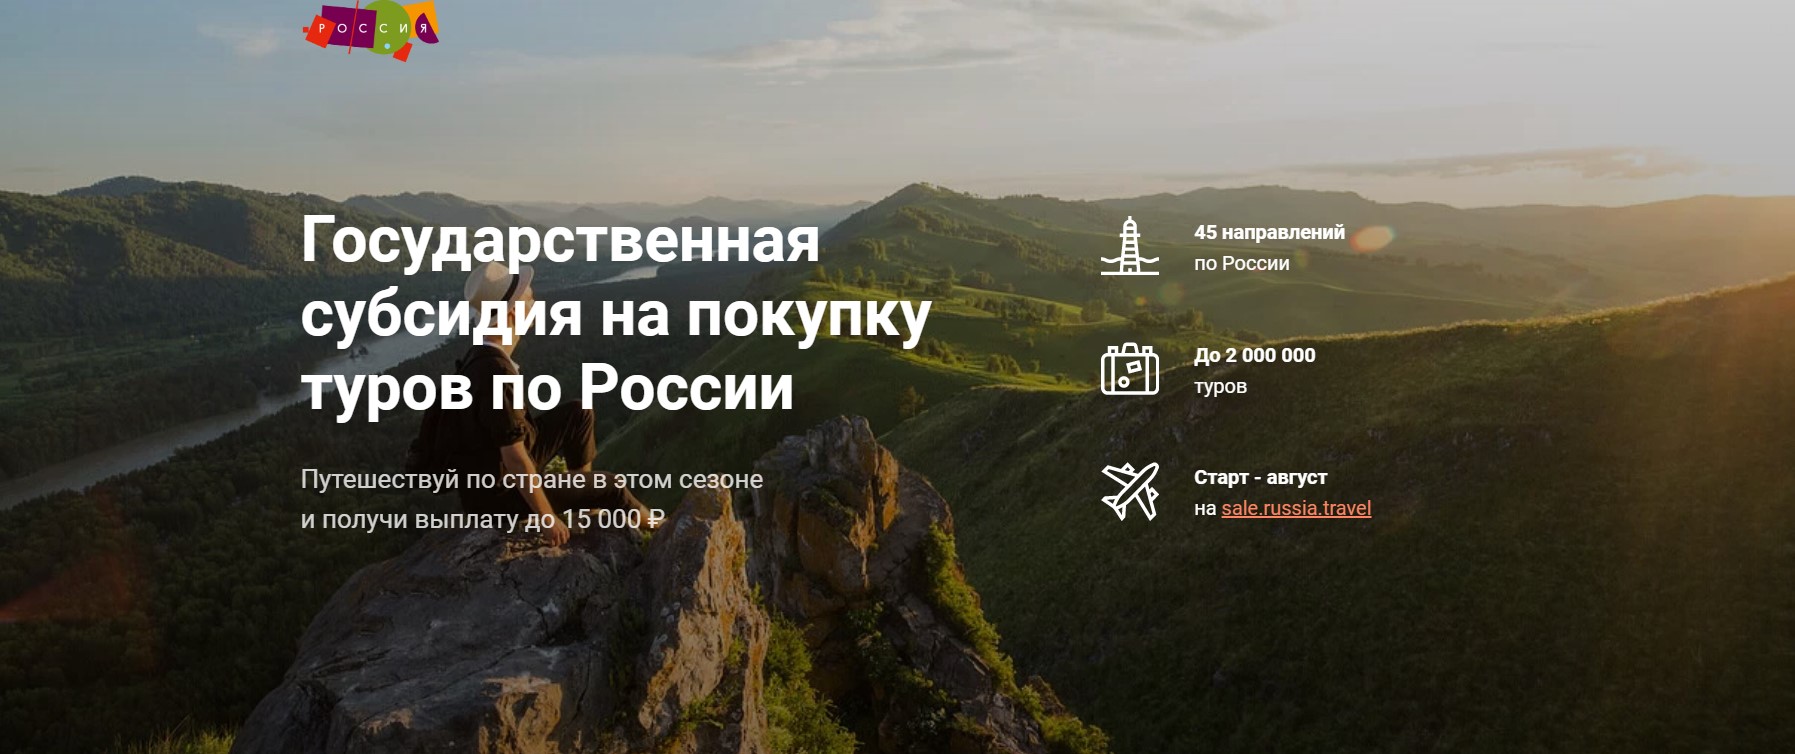 С августа 2020 года за поездки по некоторым регионам России туристы смогут получить возврат части потраченных денег. В программу вошла и Владимирская область